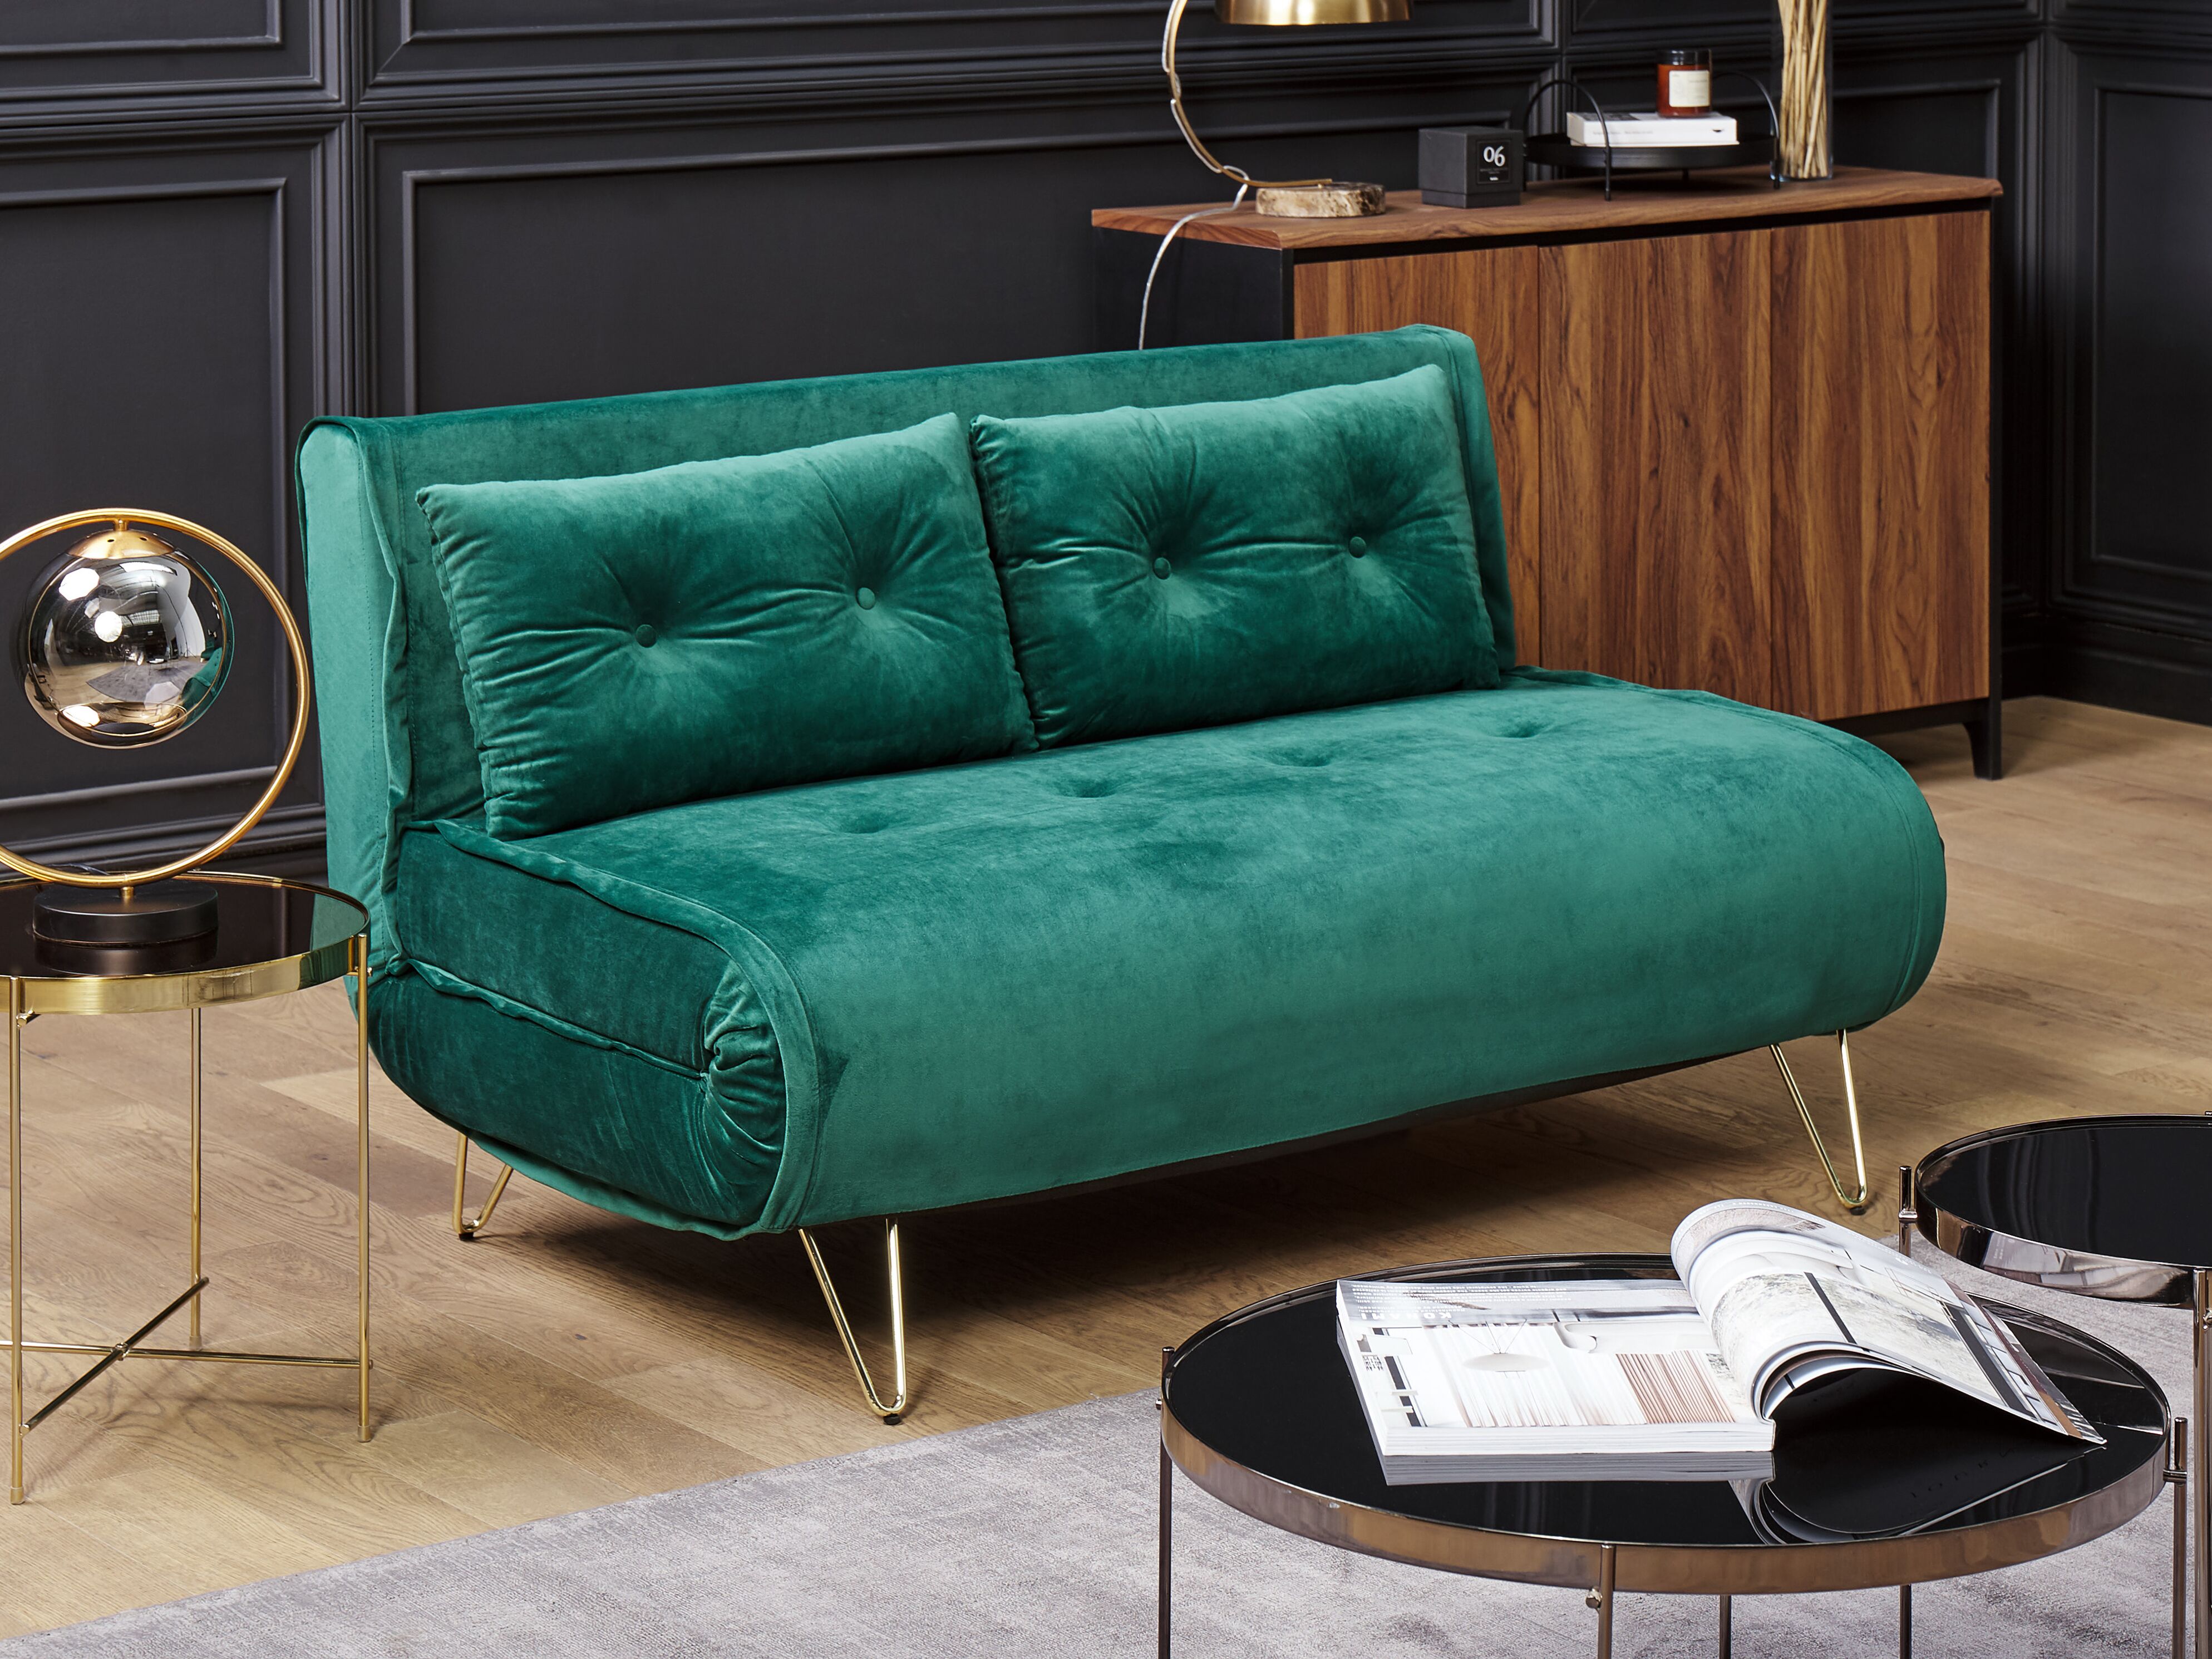 green sofa beds uk